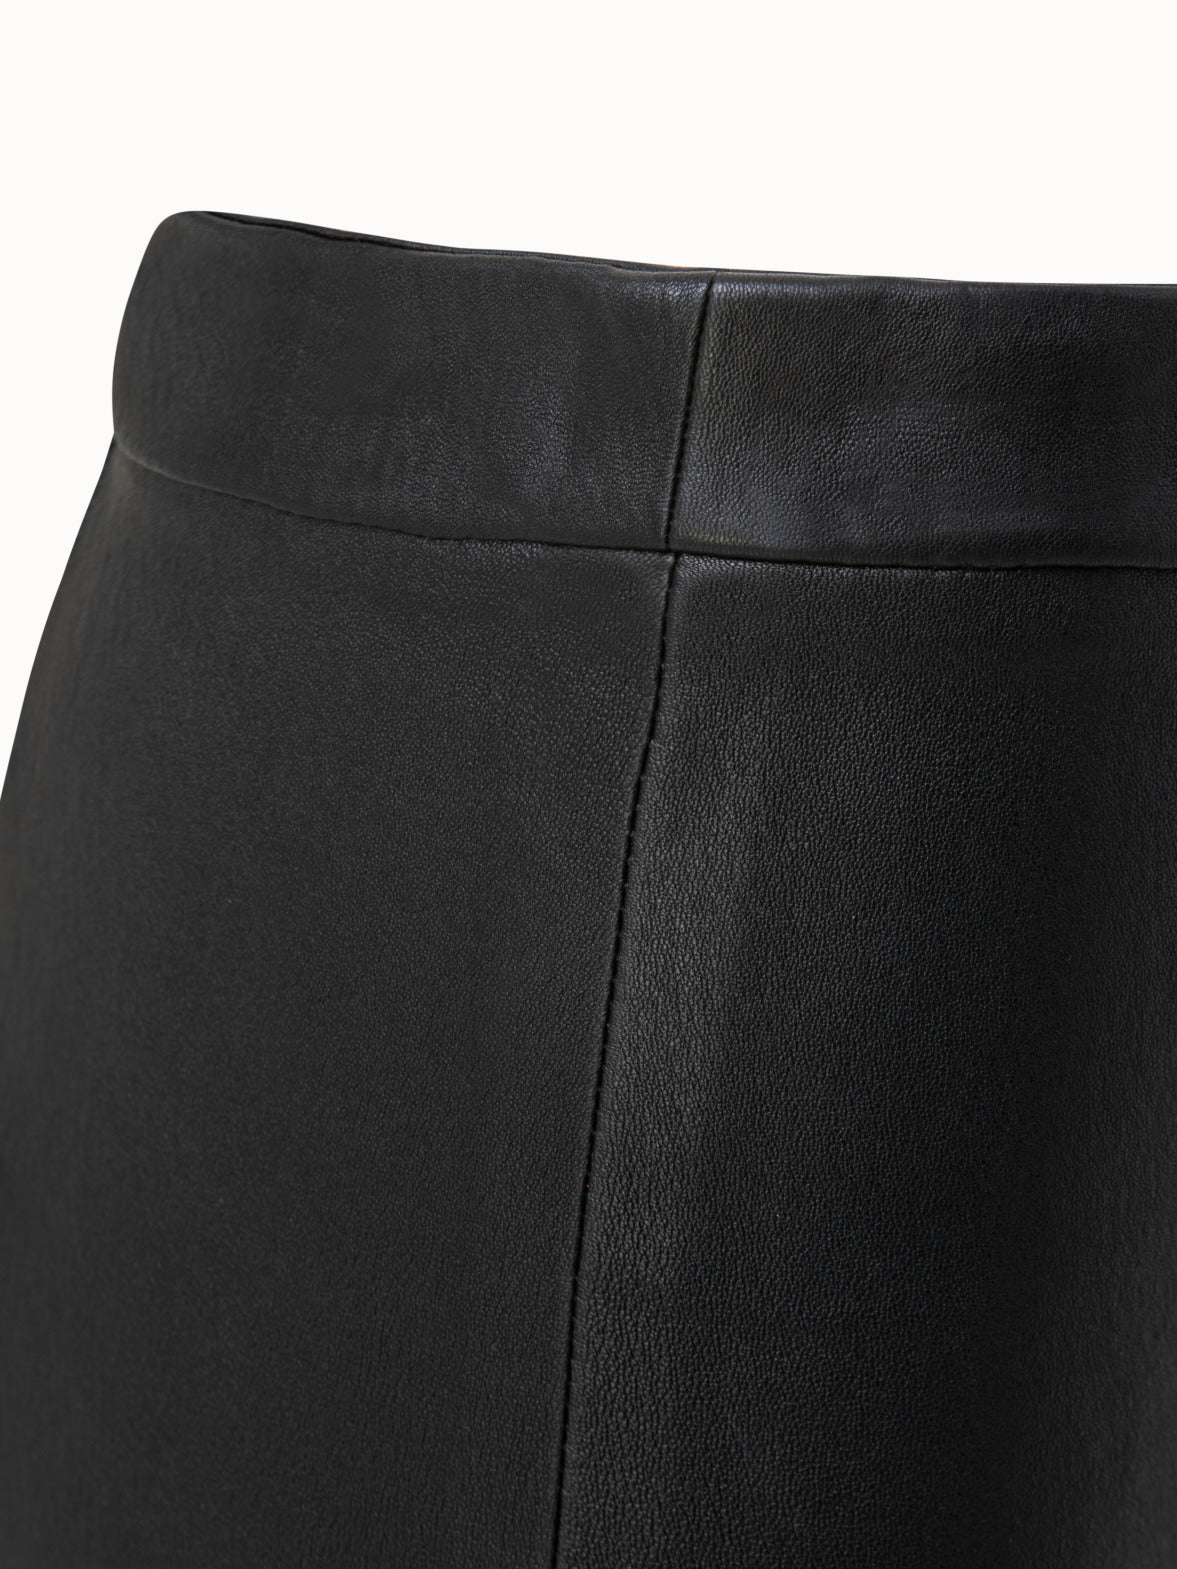 Designer Damen Lederhose schwarz mit Stretch